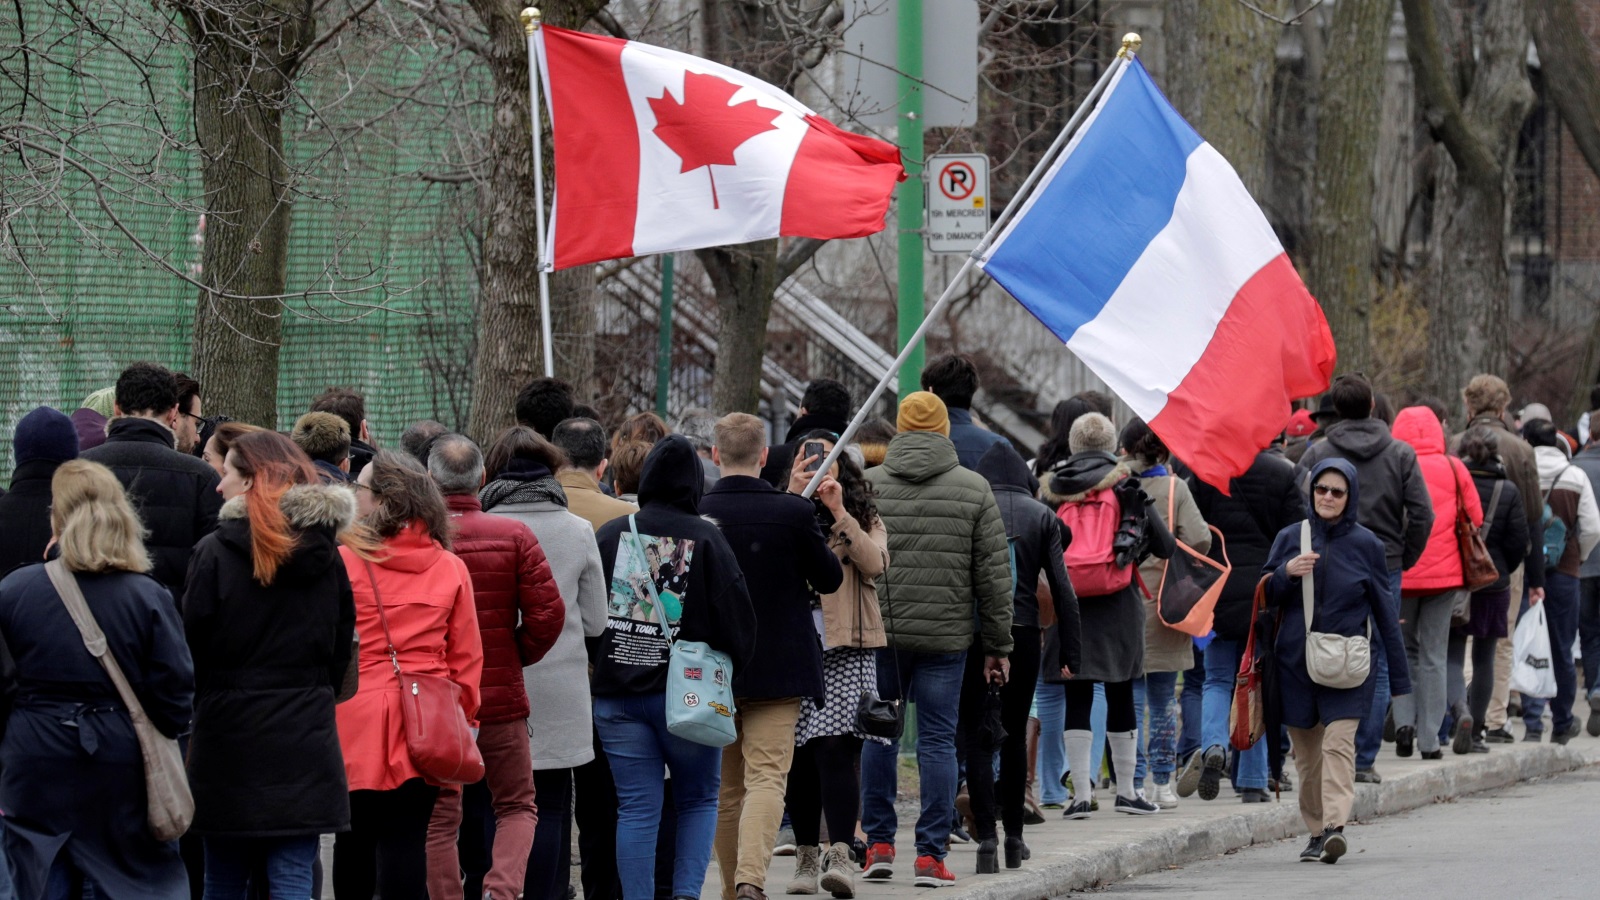 المواطنين الفرنسيين في كندا يتوجهون لمراكز الاقتراع للمشاركة في الانتخابات الرئاسية الفرنسية  (رويترز)